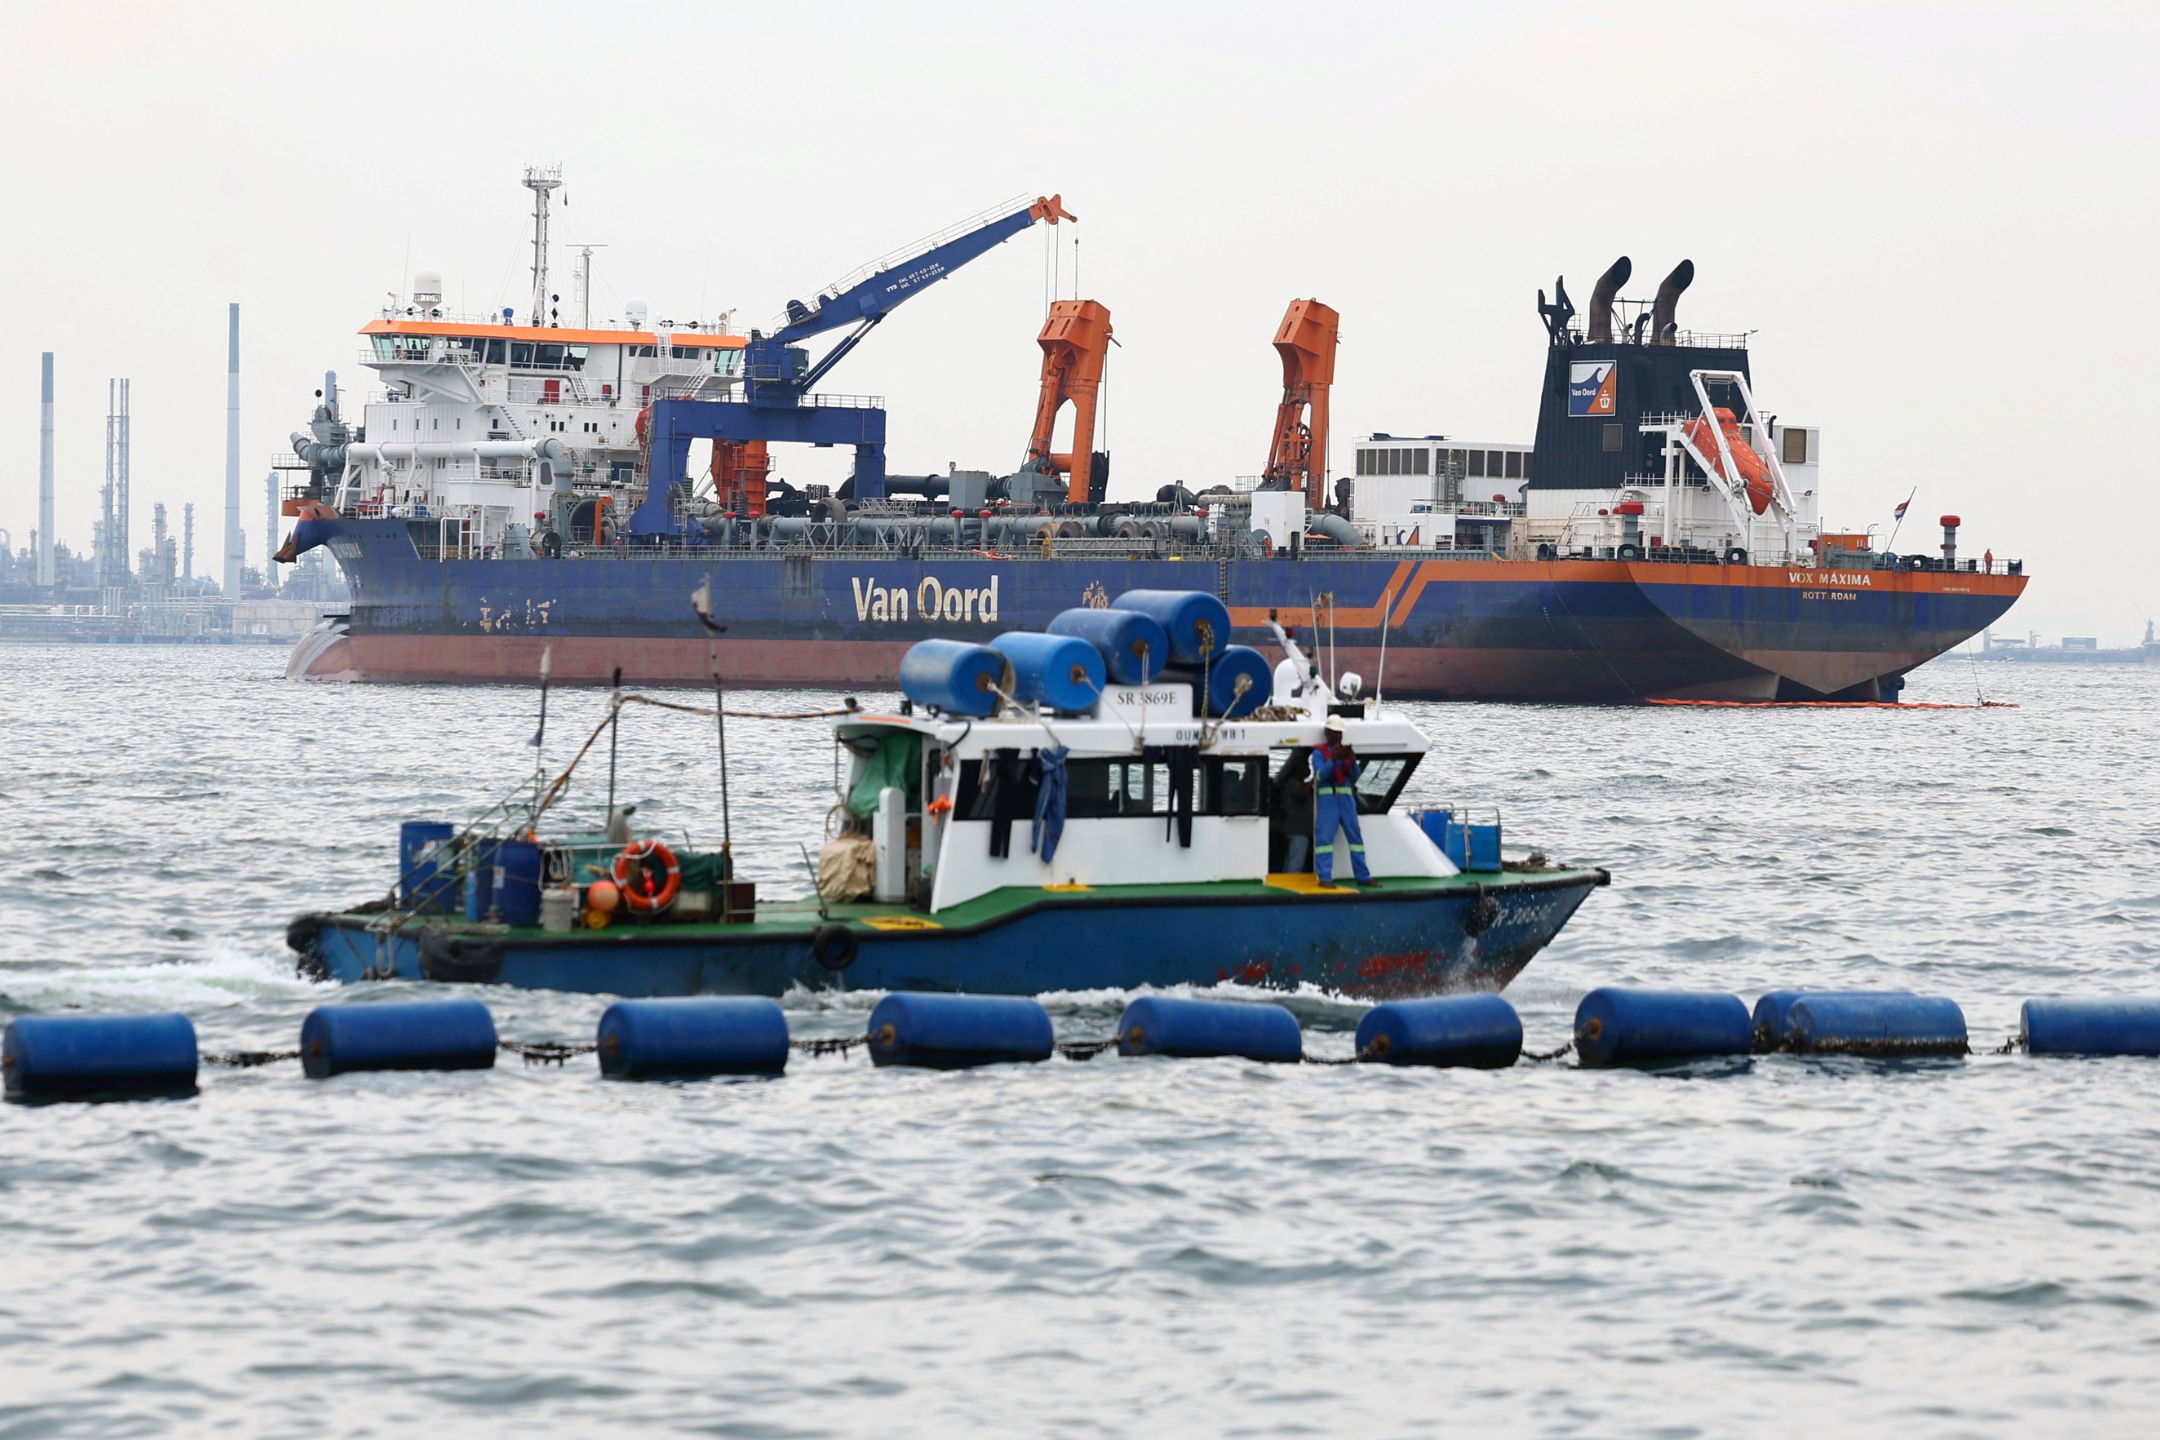 新国撞船事故迈入第七天  油渍扩散至边佳兰海域